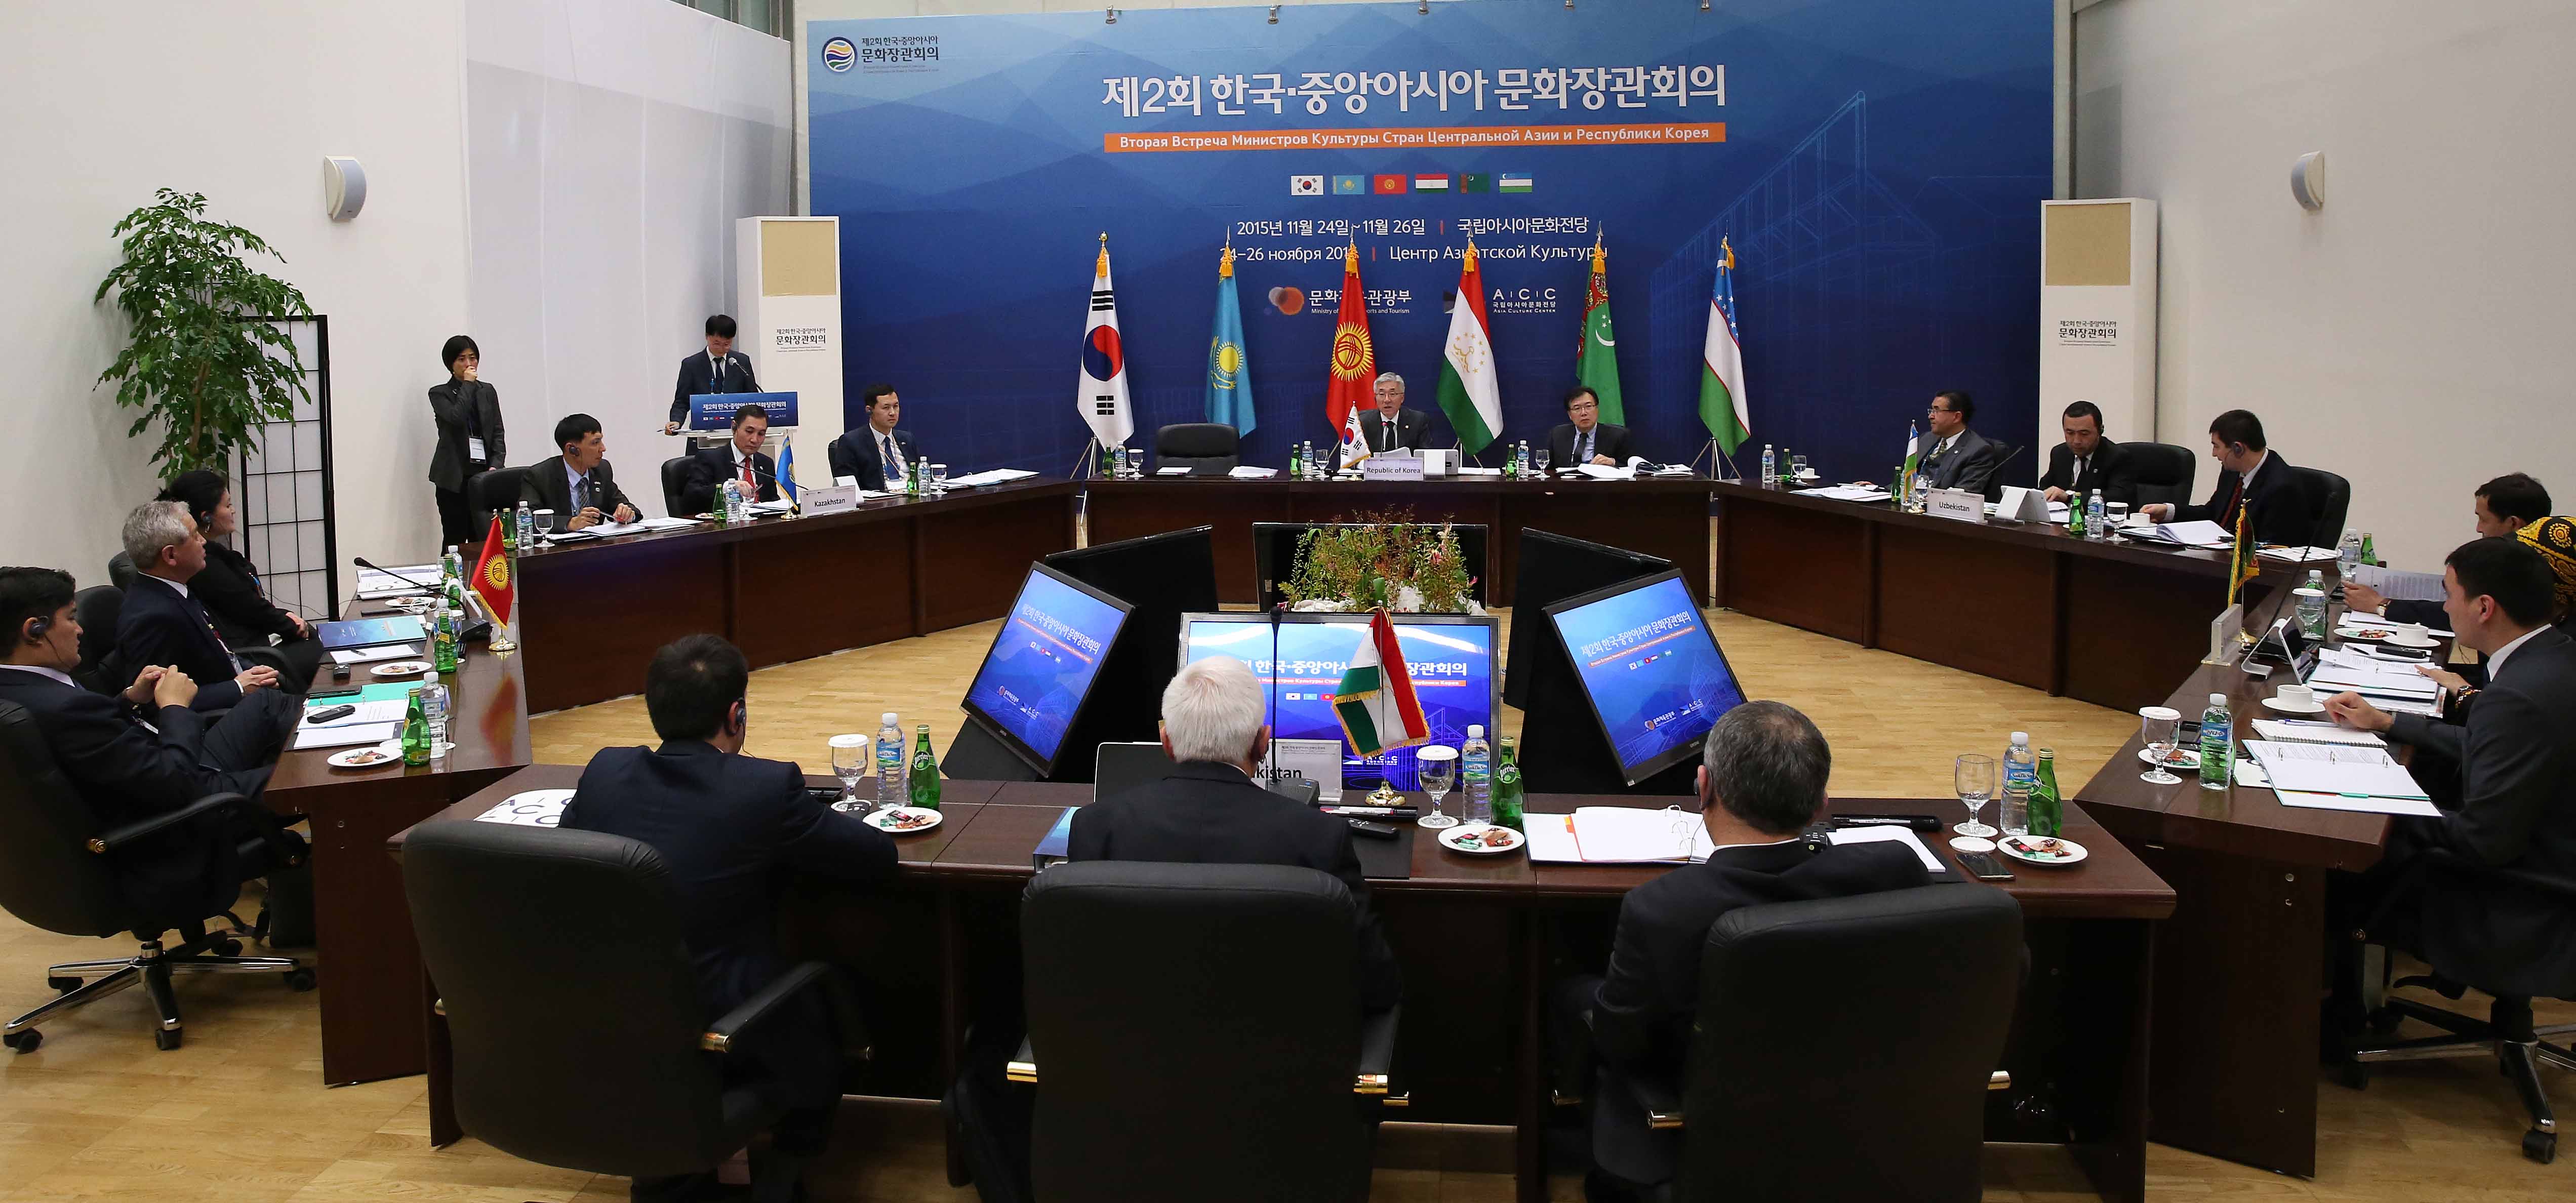 제2회 한-중앙아시아문화장관 회의 개최